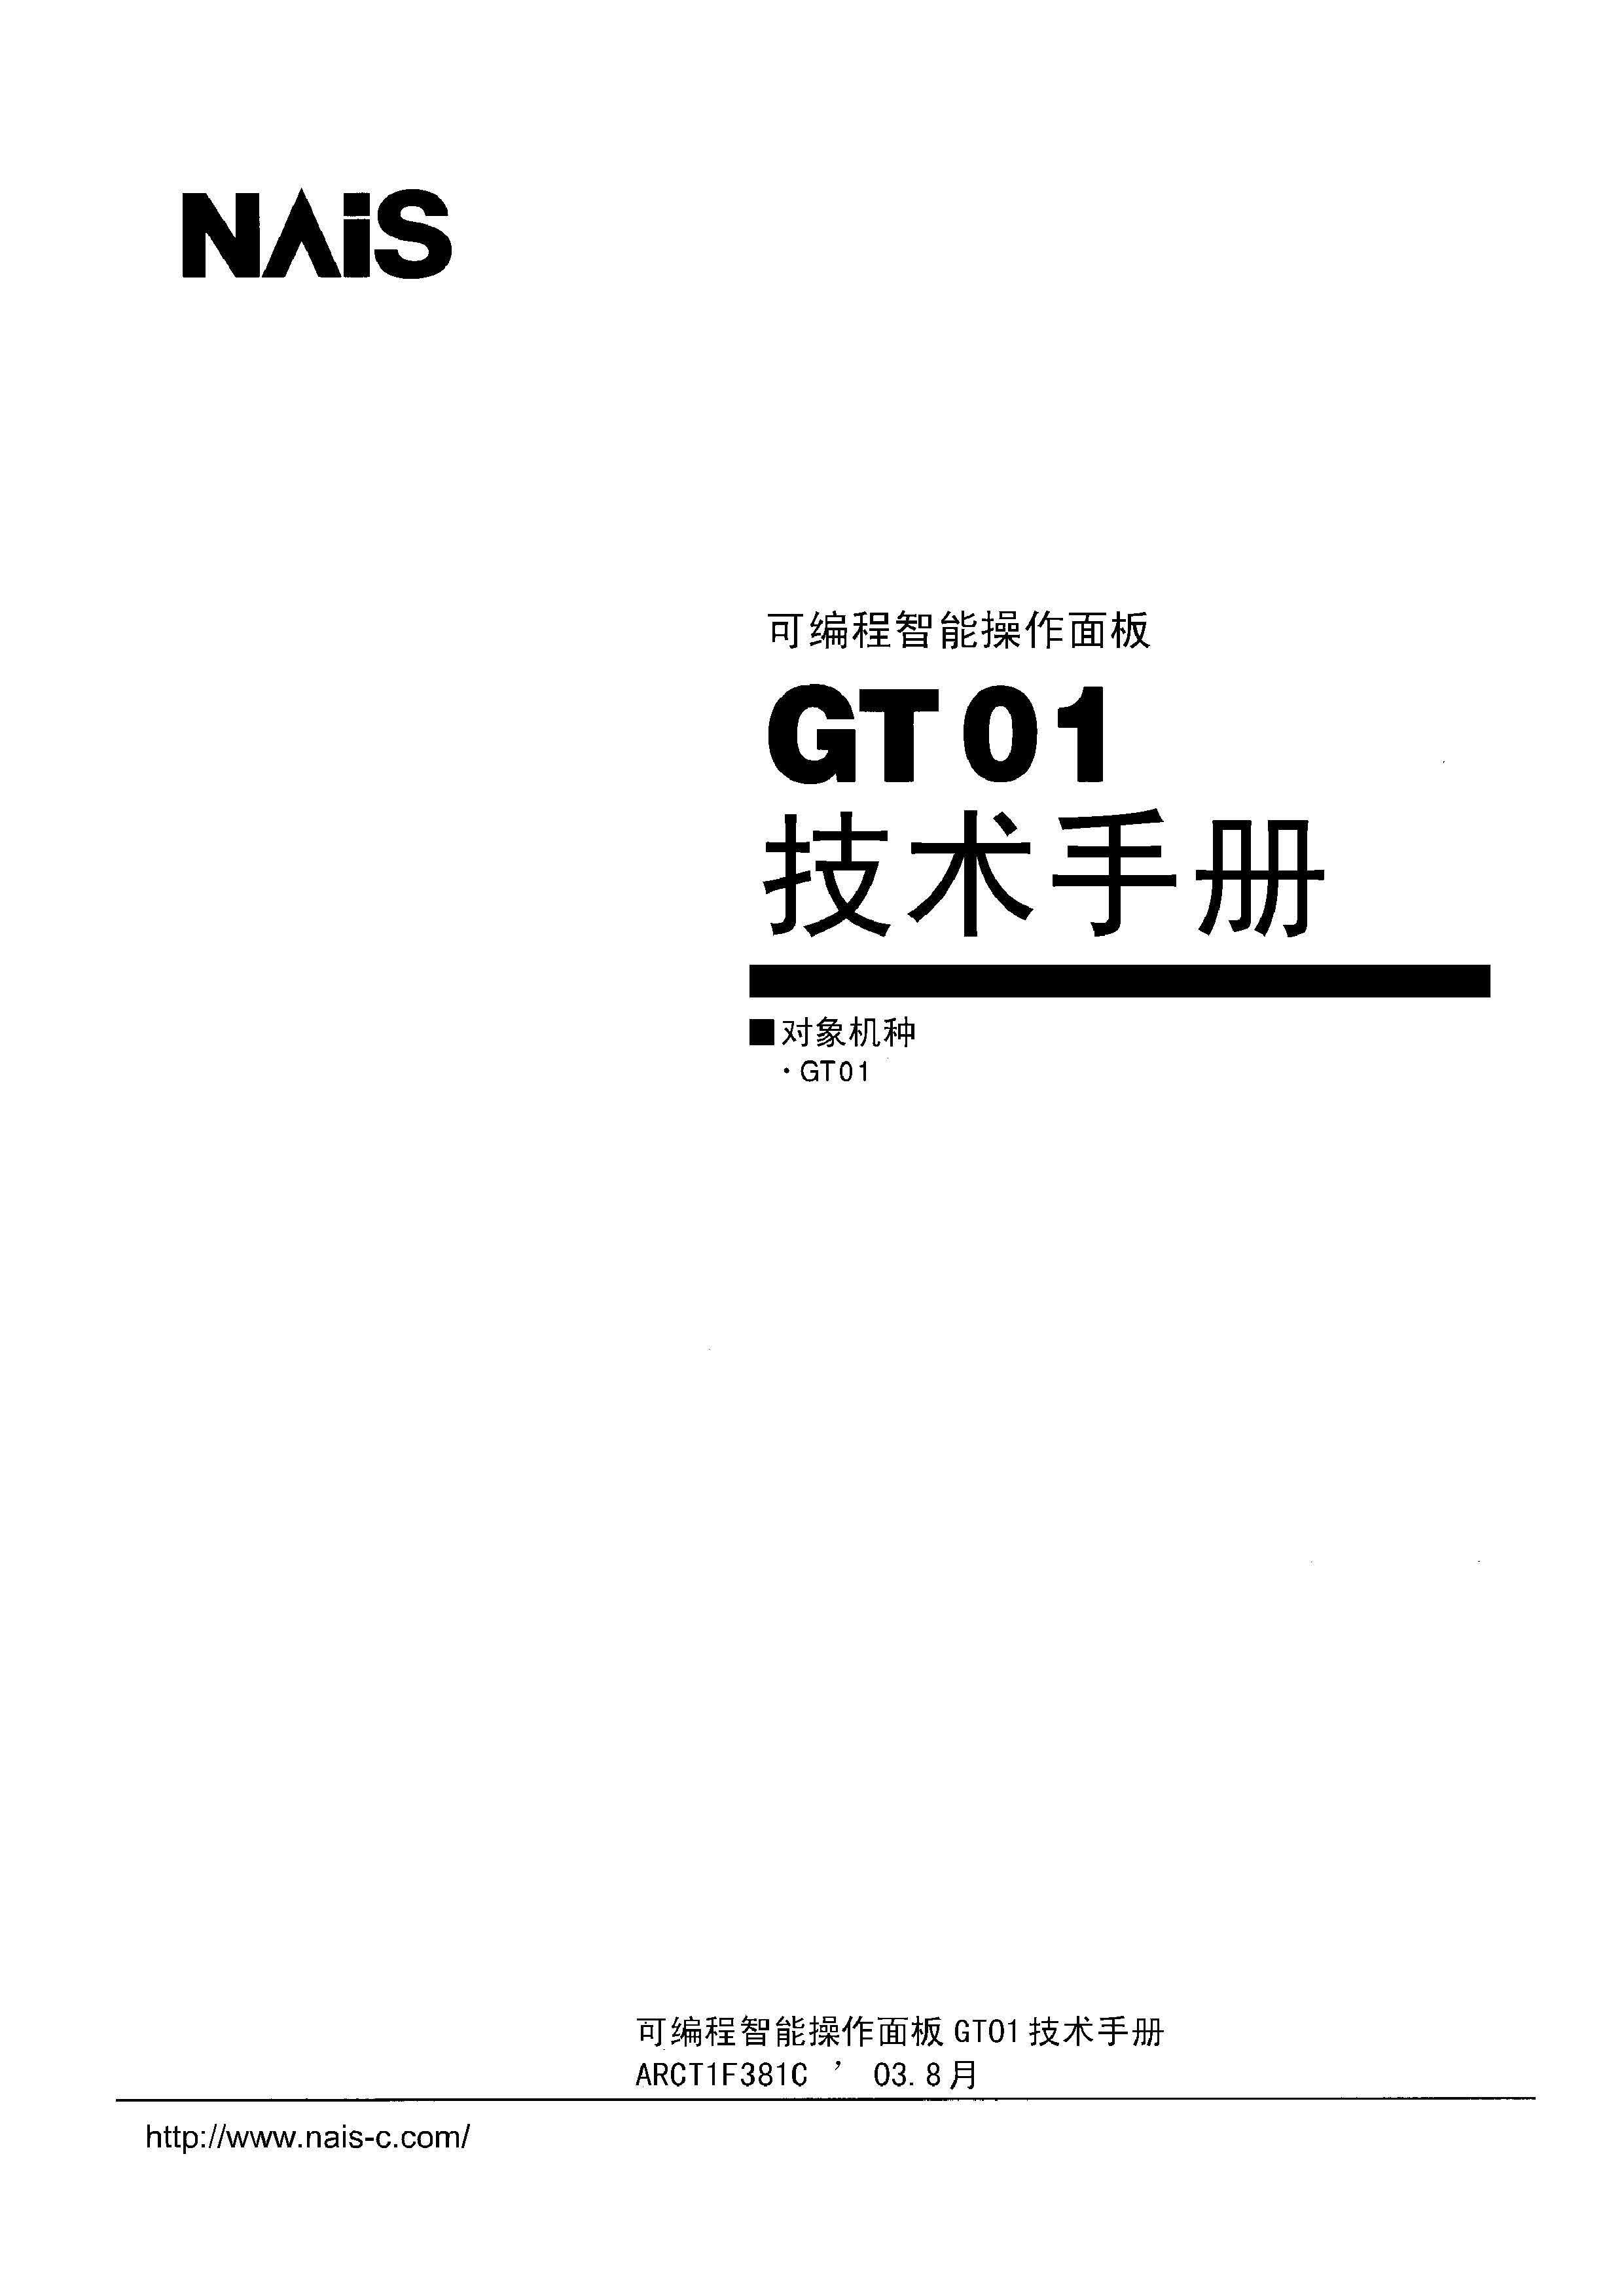 松下 GT01硬件手册